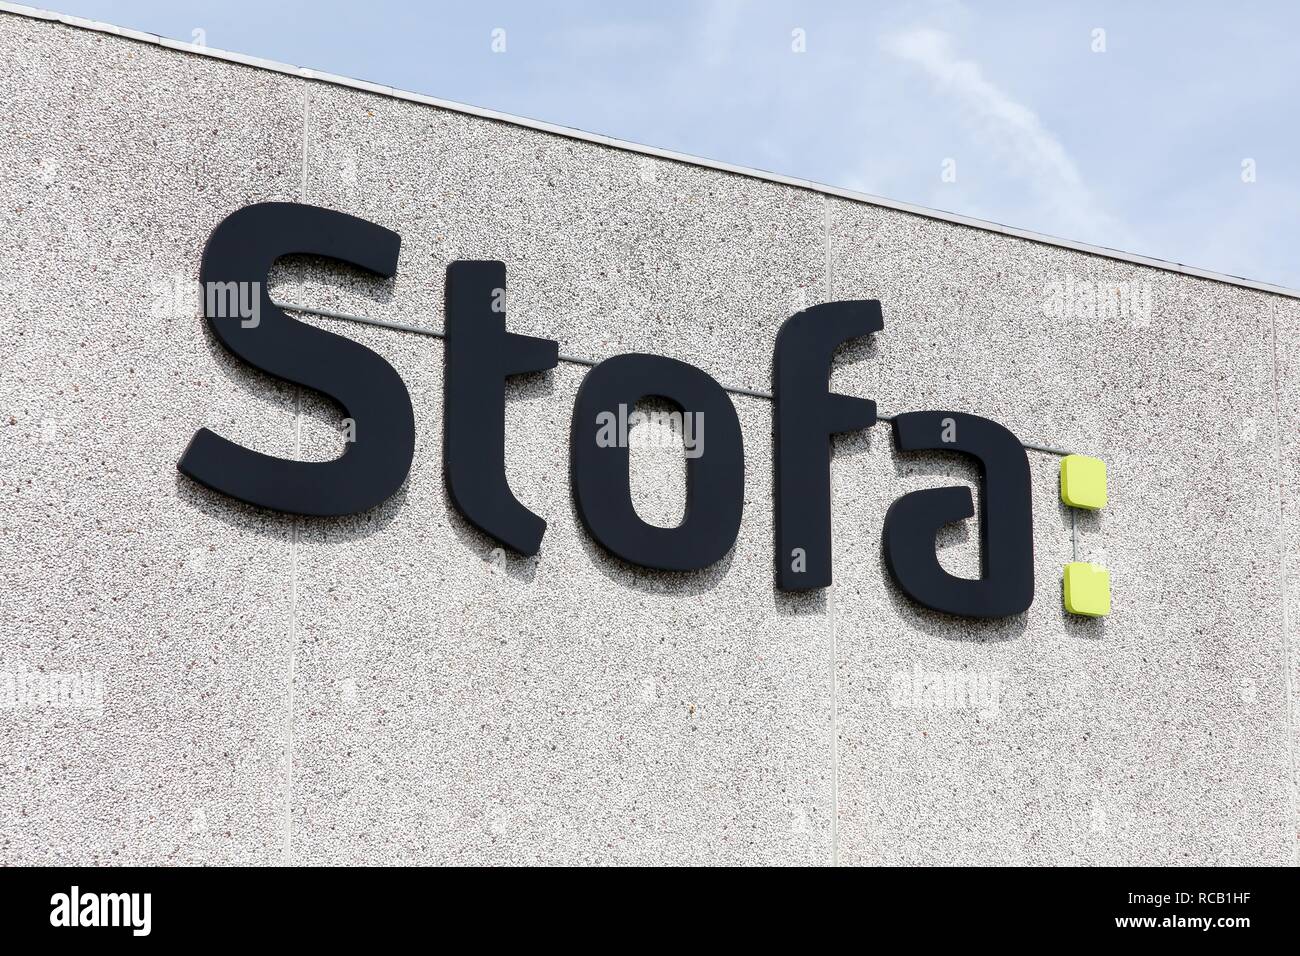 Horsens, Danemark - 22 mai 2016 : Stofa logo sur un panneau. Stofa est une société danoise de fournir la télévision par câble et internet Banque D'Images